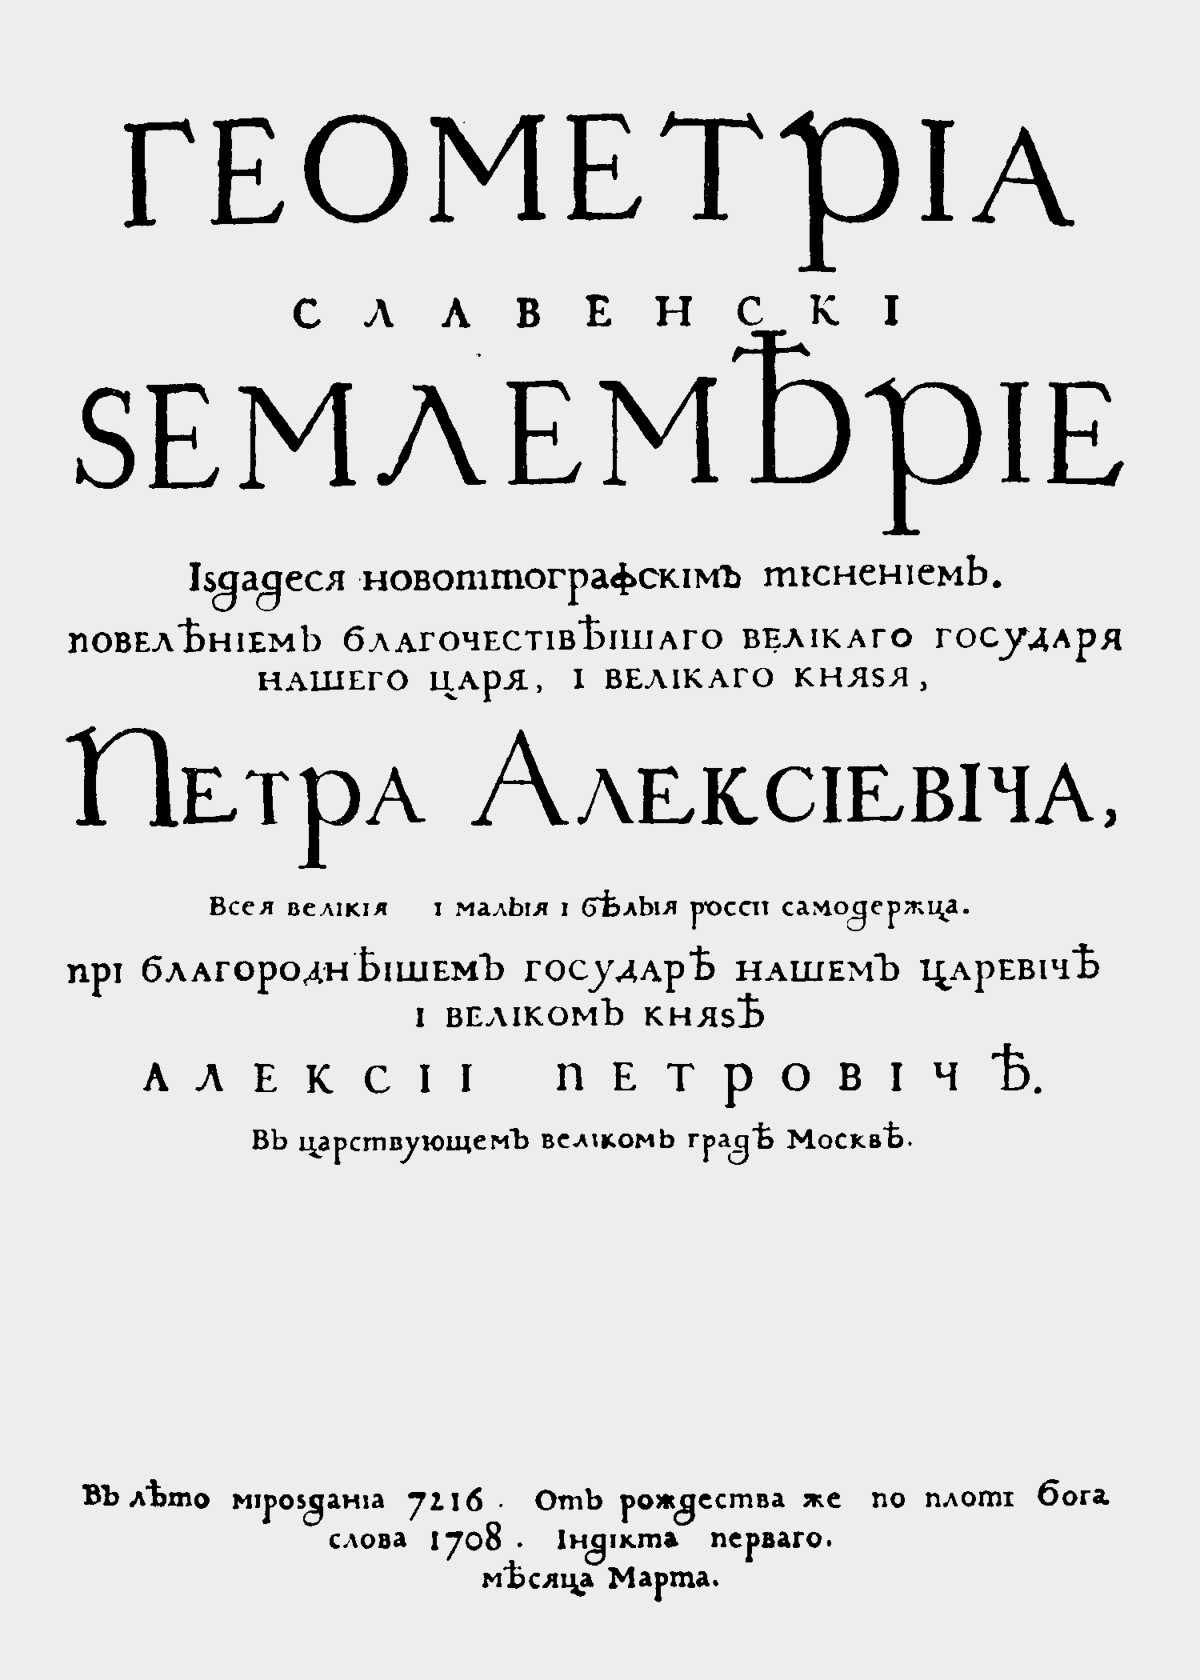 „Geometria slavenski zemlemerie“, prva ruska knjiga odštampana slovima građanske azbuke.